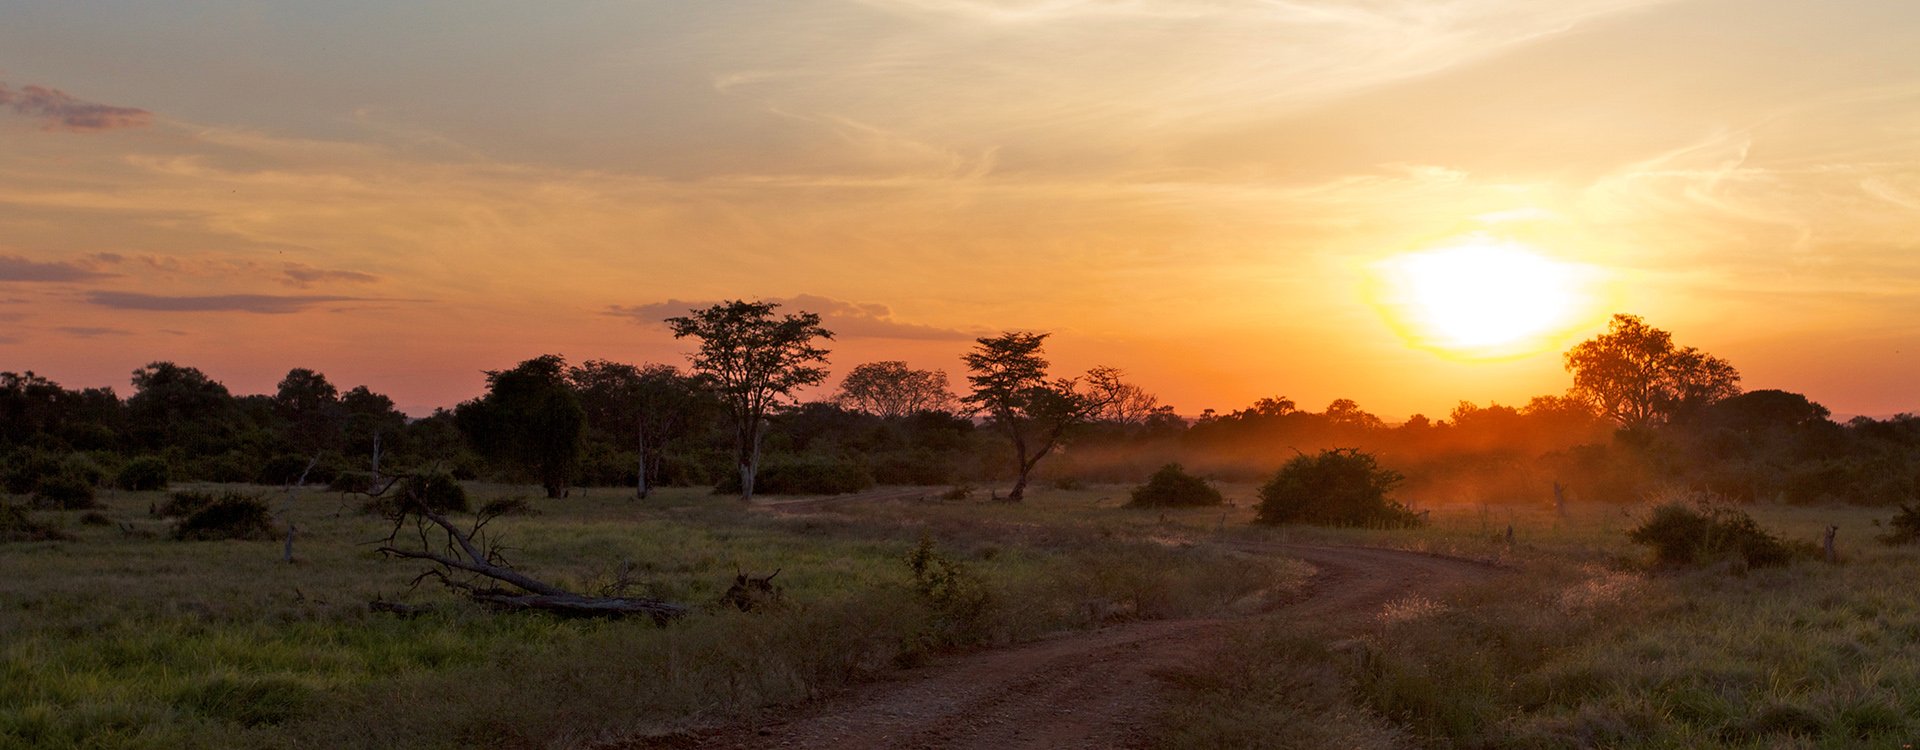 Zambia_Luangwa  NP_Sunset